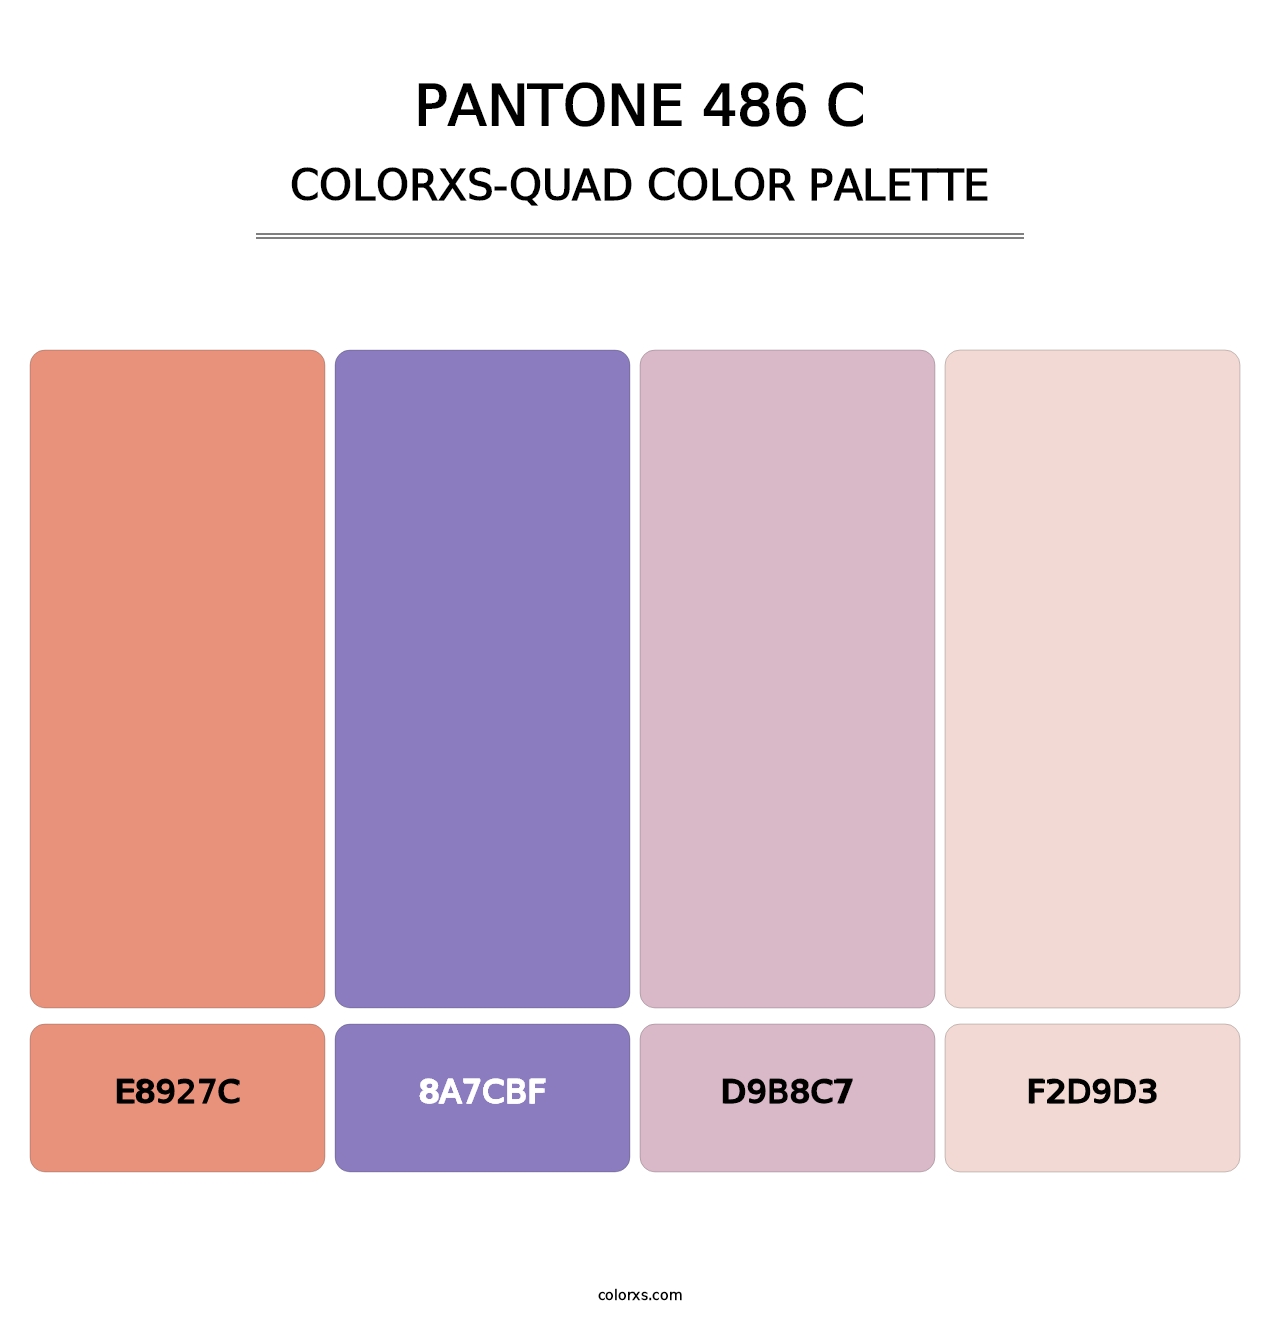 PANTONE 486 C - Colorxs Quad Palette